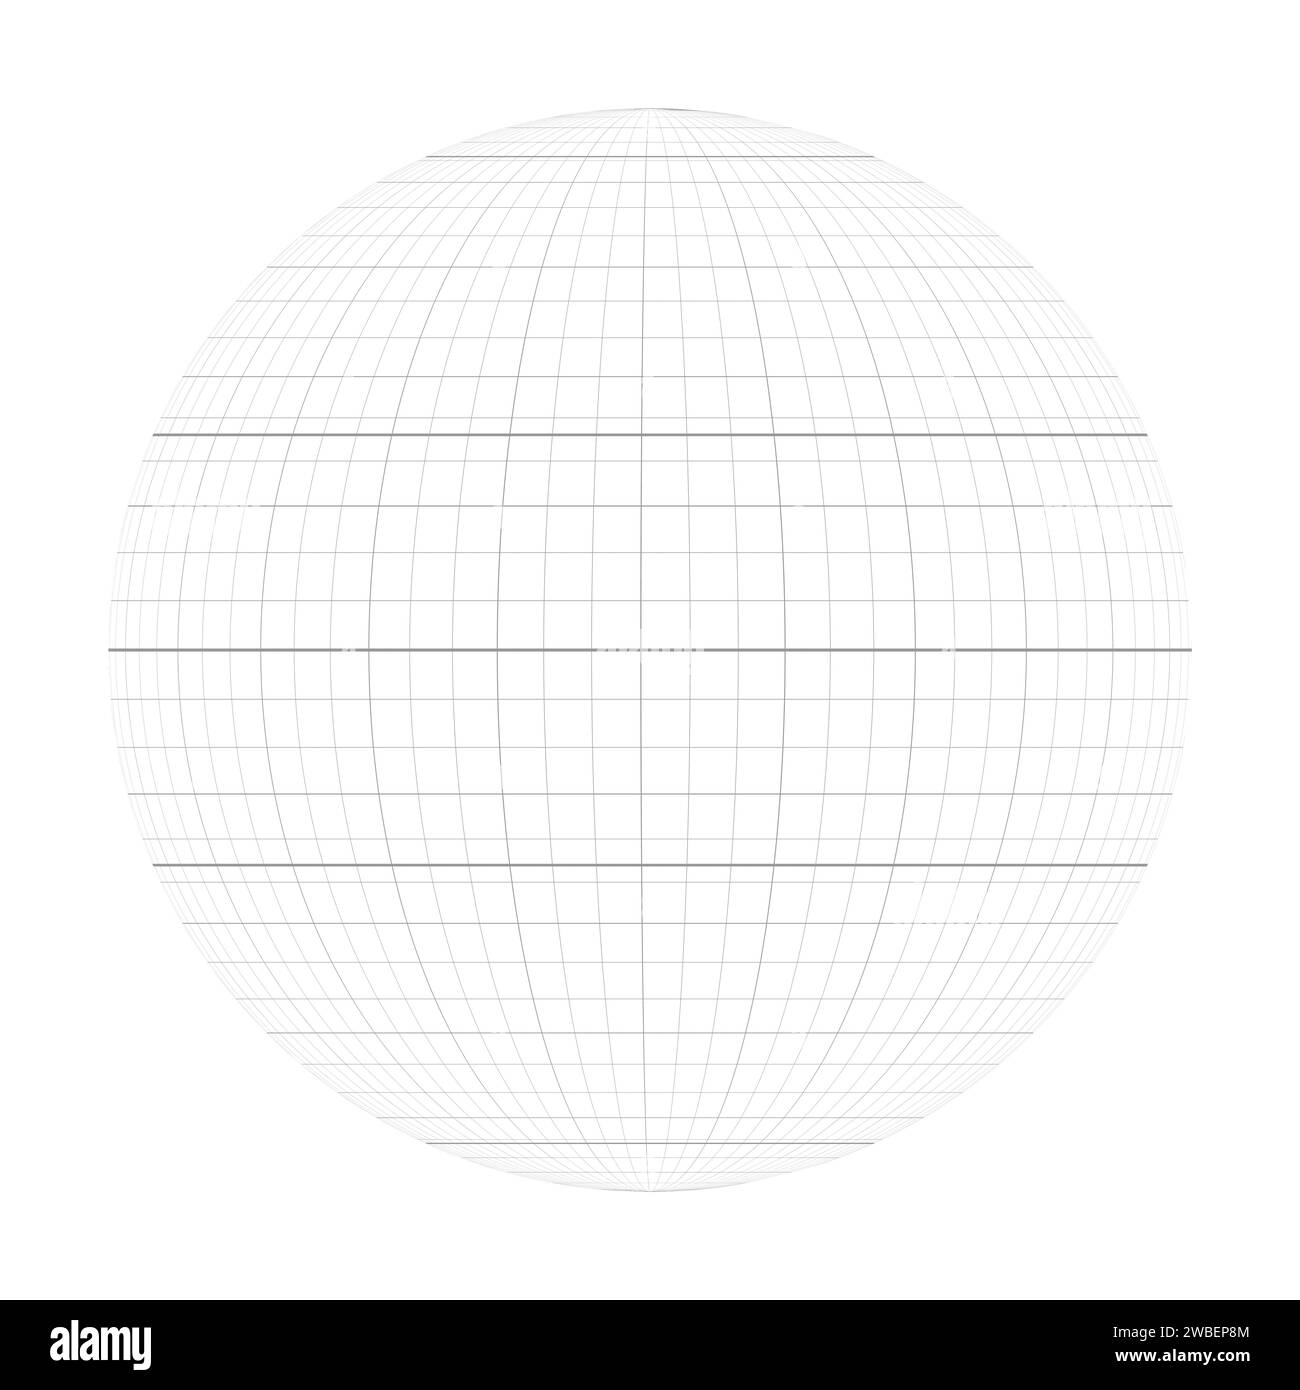 Terra pianeta globo griglia di meridiani e paralleli, o latitudine e longitudine. Equatore spesso segnato, Tropico del Capricorno, Tropico del cancro, Circolo polare Artico e Circolo Antartico. Illustrazione vettoriale Illustrazione Vettoriale